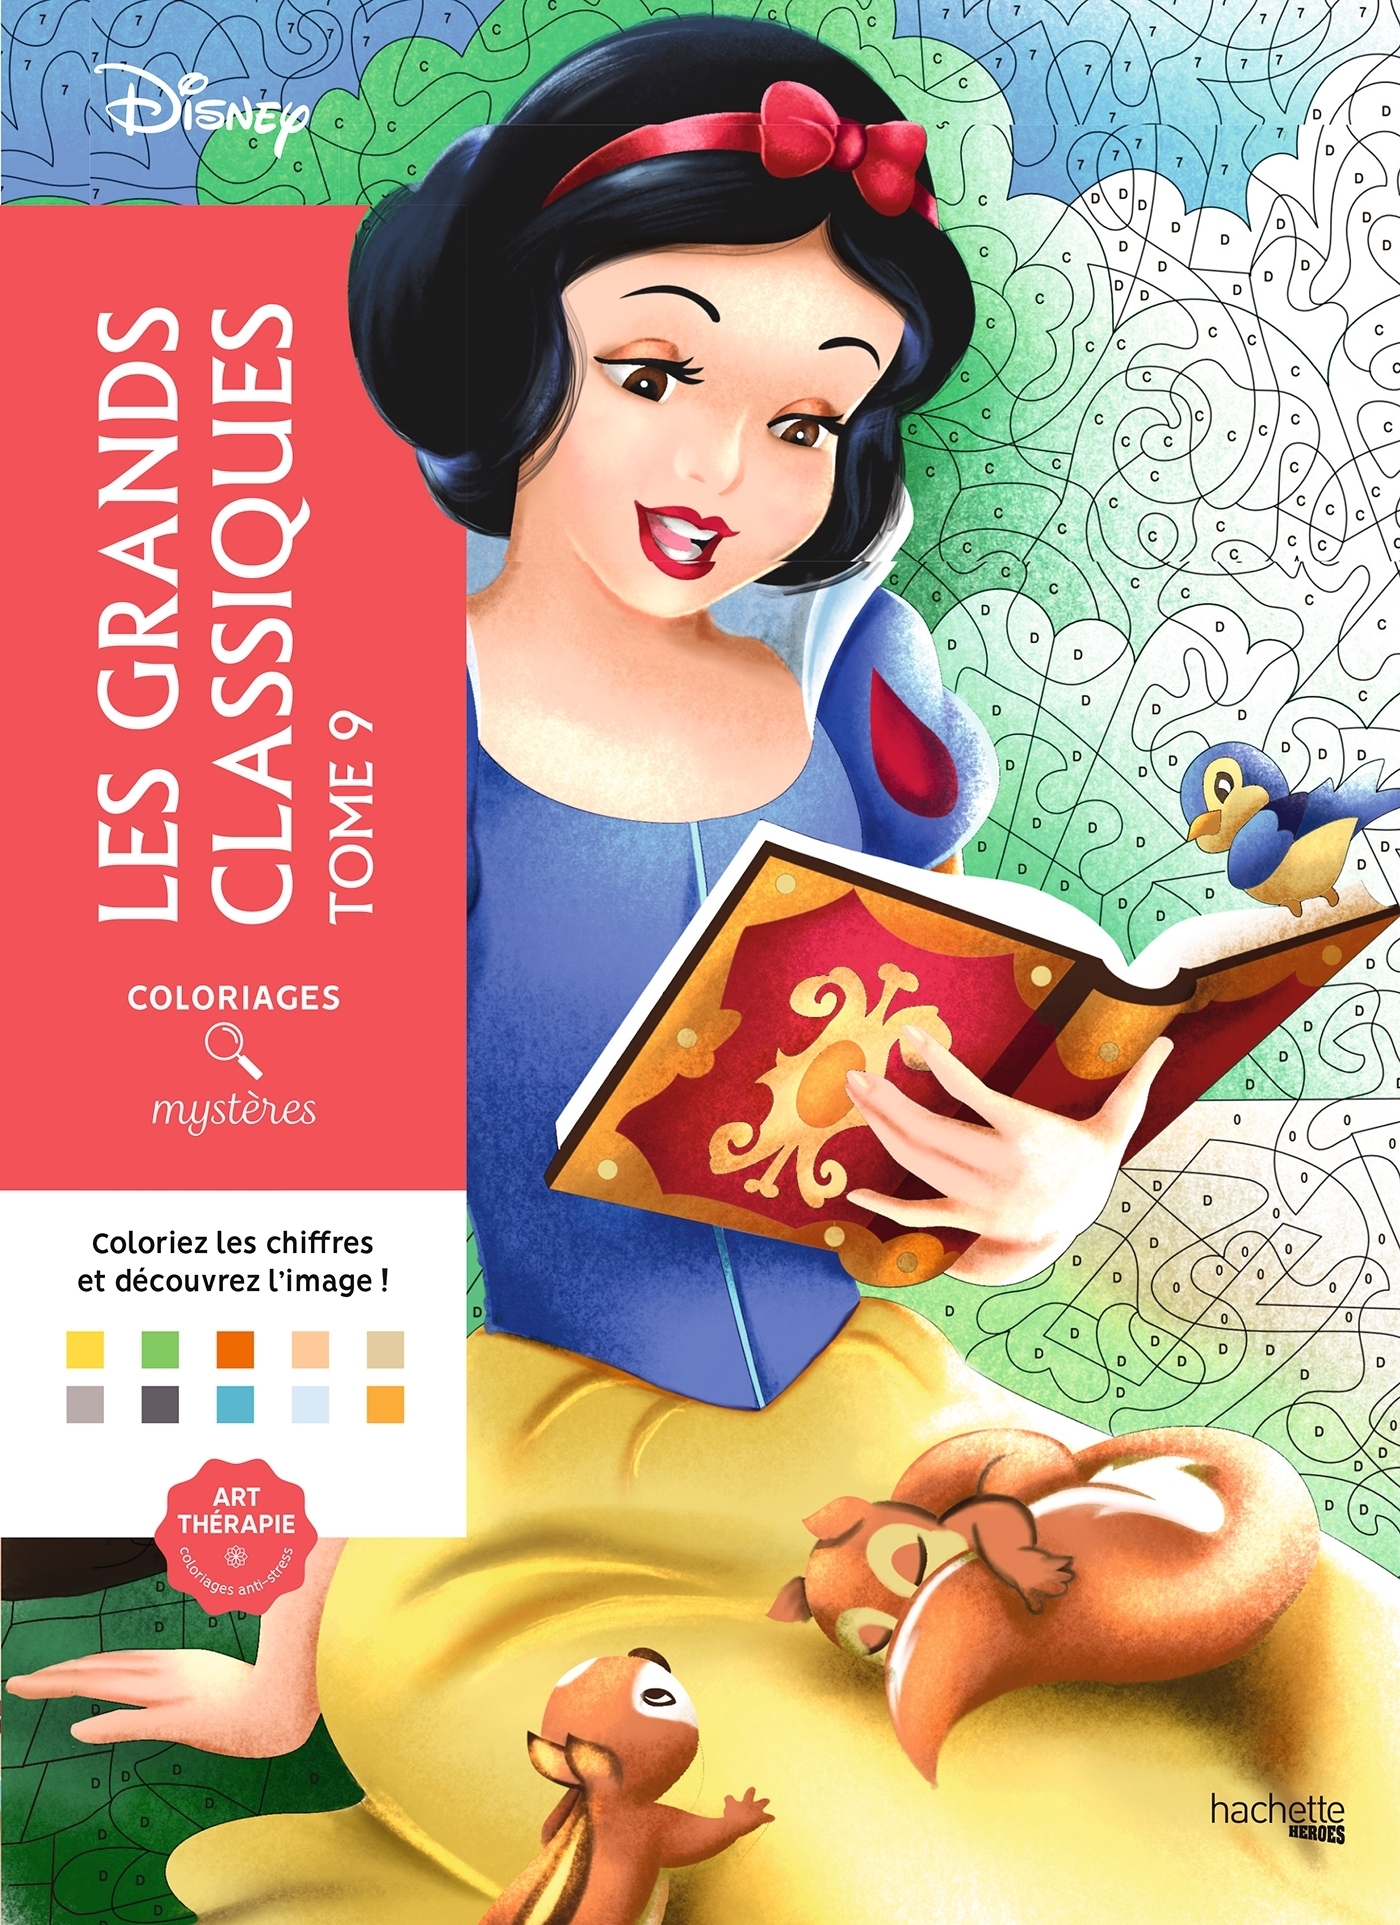 Les grands classique Disney N°72 - Les coloriages mystères de Clémence